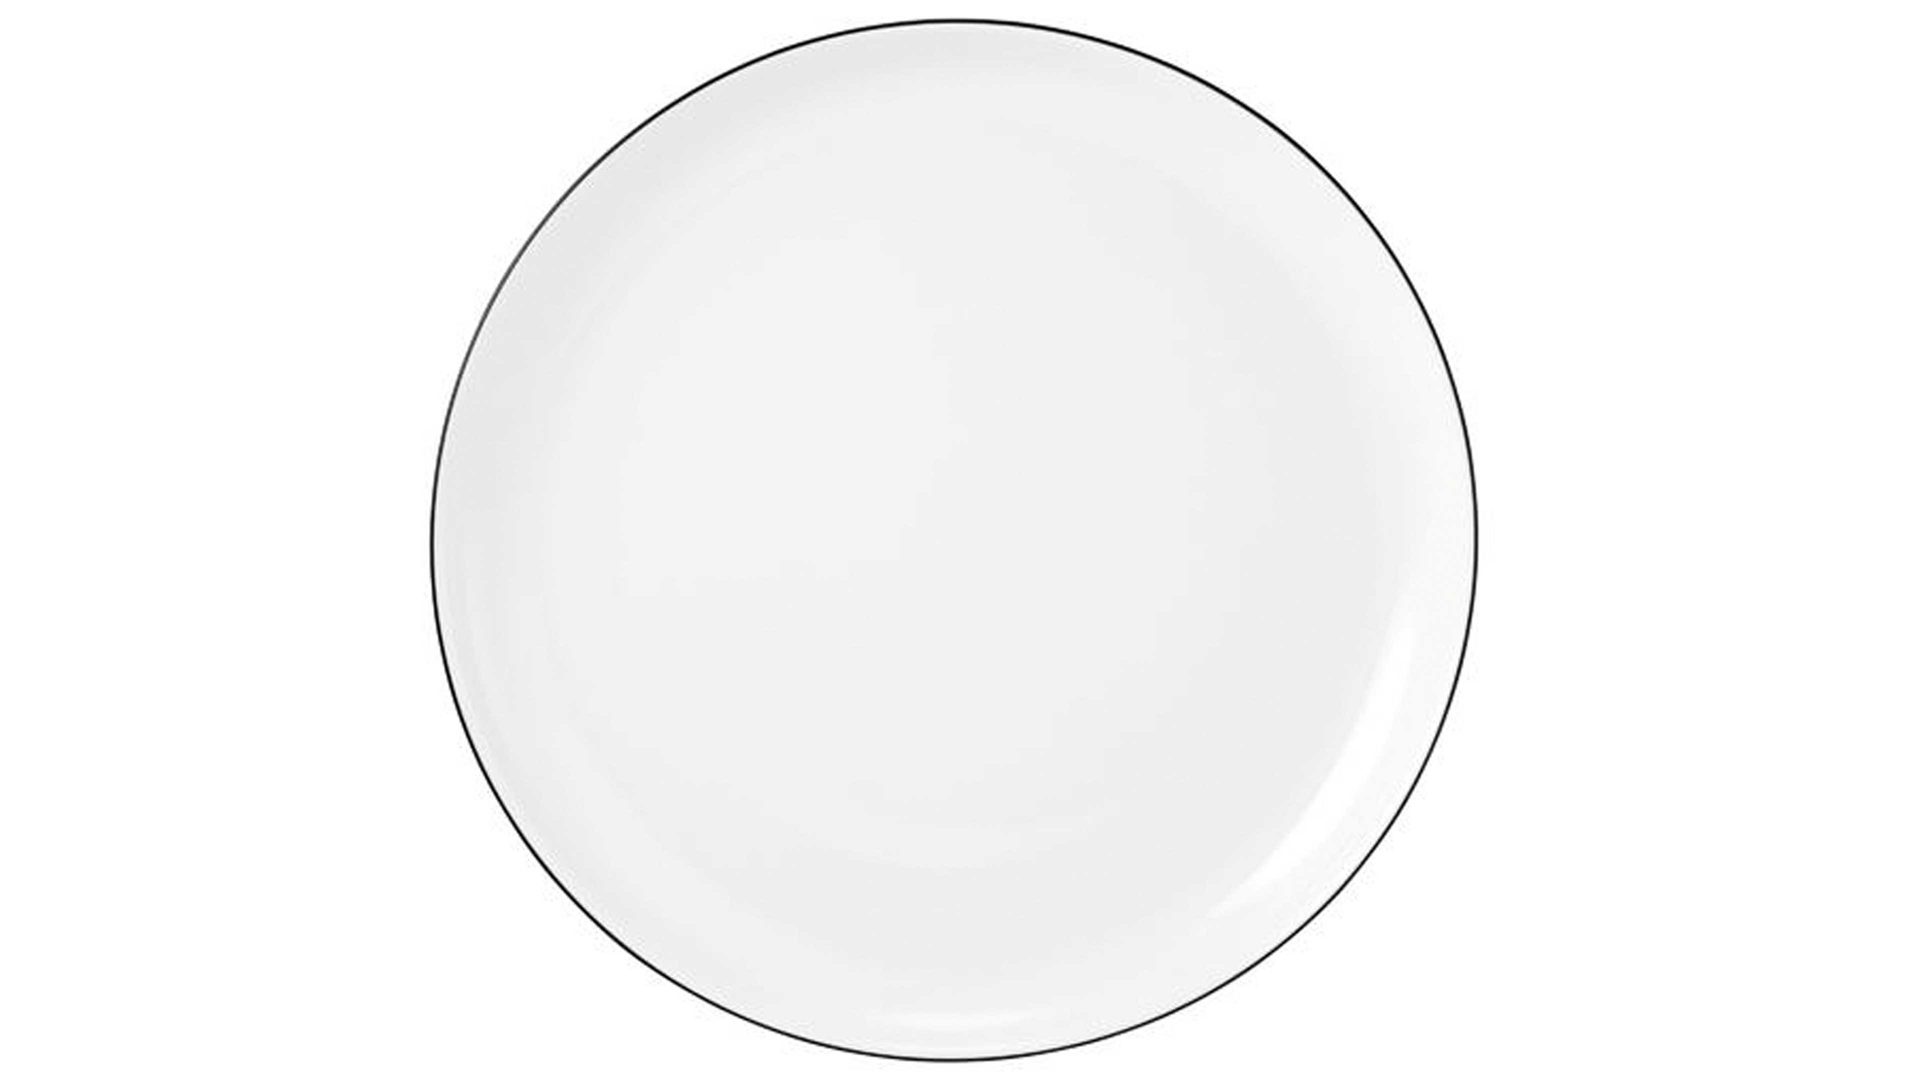 Kuchen- / Frühstücks- / Dessertteller Seltmann aus Porzellan in Weiß Seltmann Lido – Frühstücksteller weißes Porzellan – Durchmesser ca. 20 cm